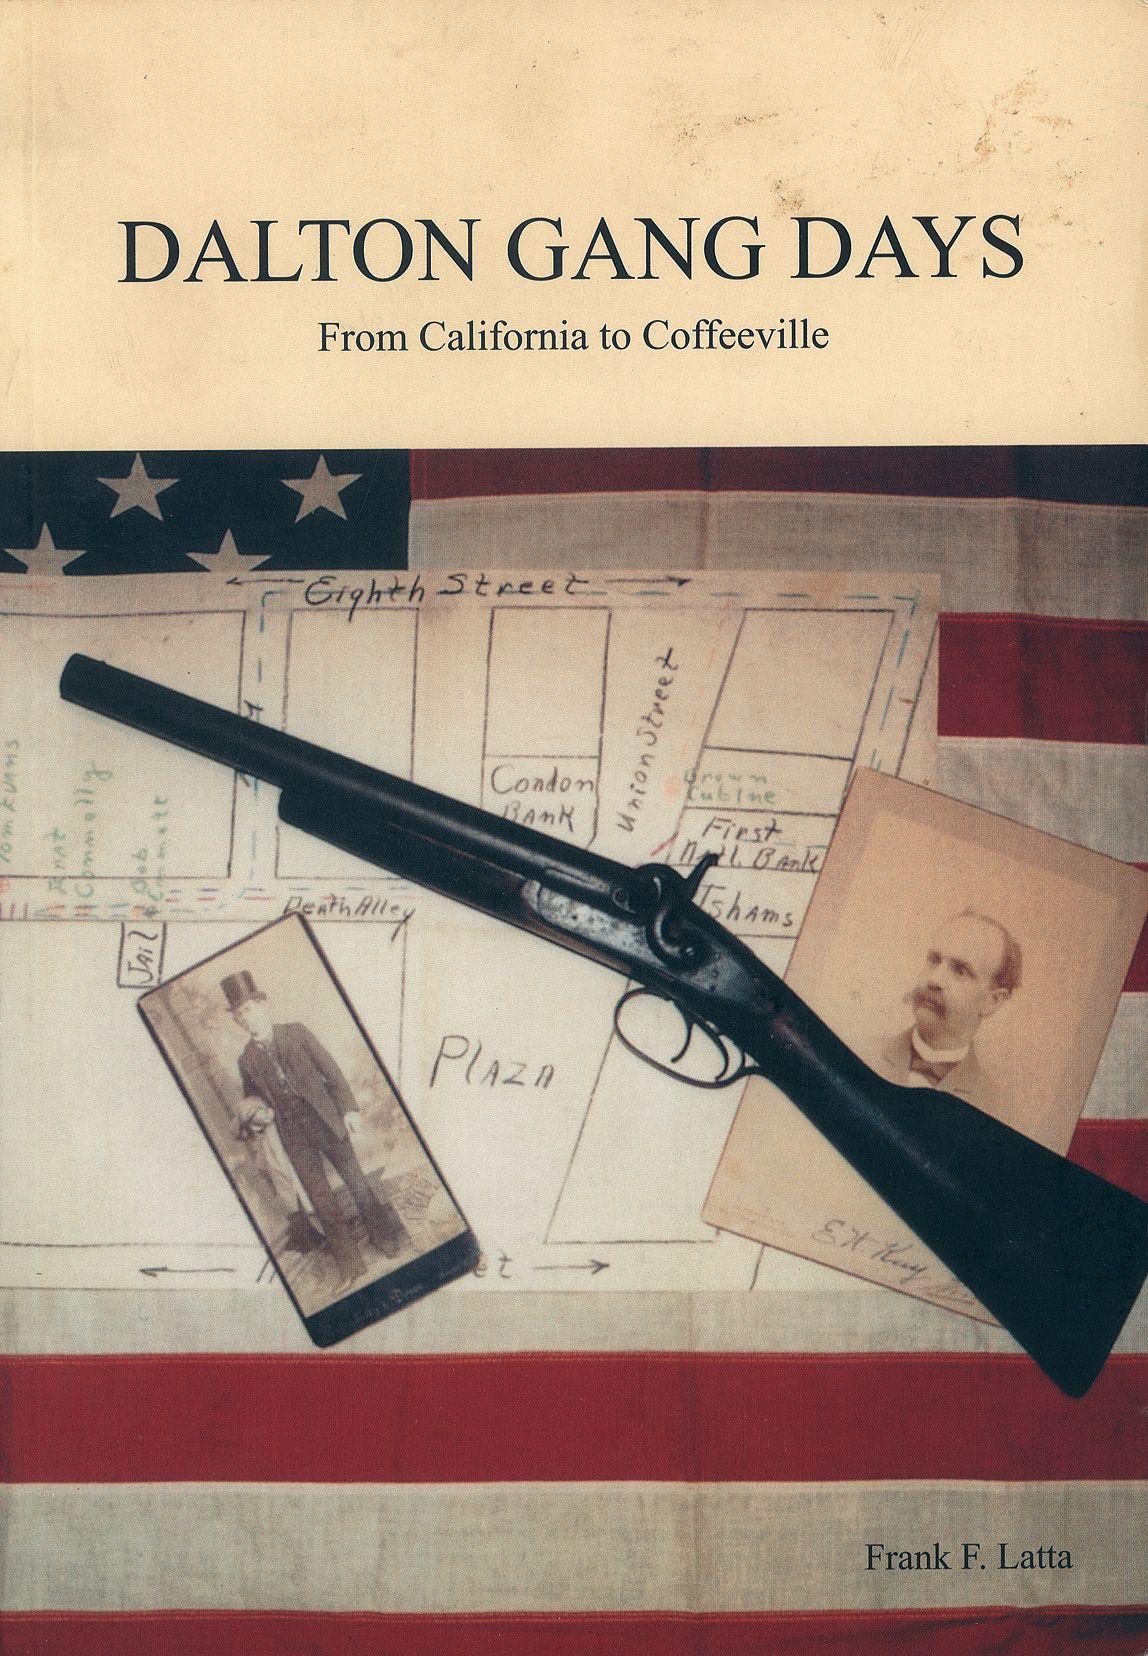 Bob Dalton's Factory Engraved Colt Single Action Army Revolver